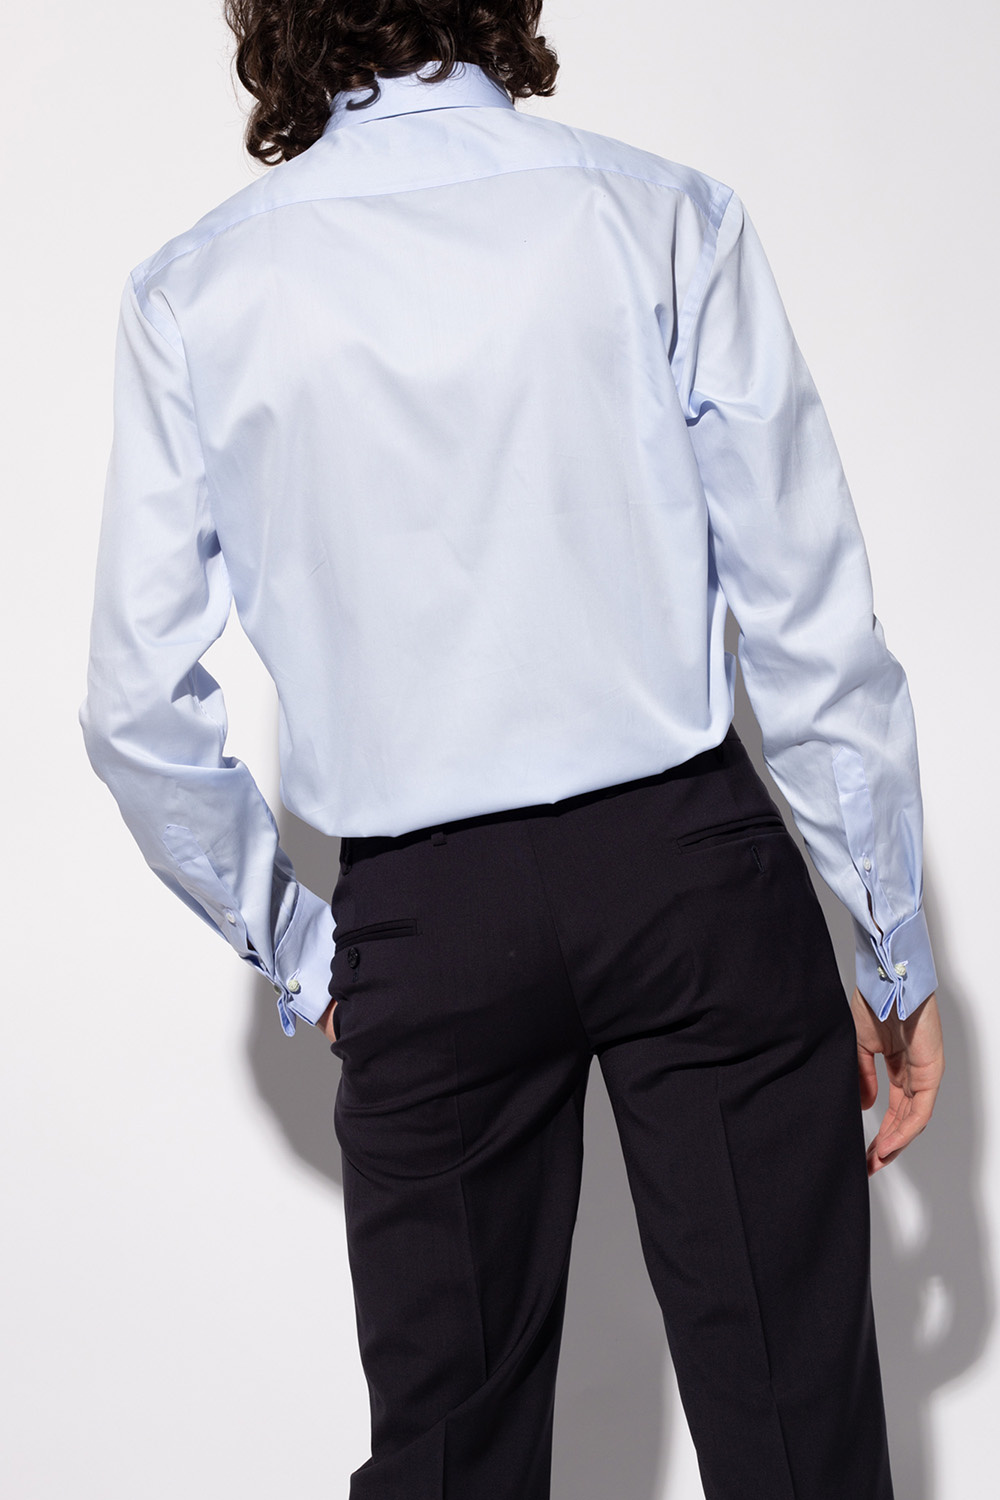 Giorgio armani grey Cotton shirt